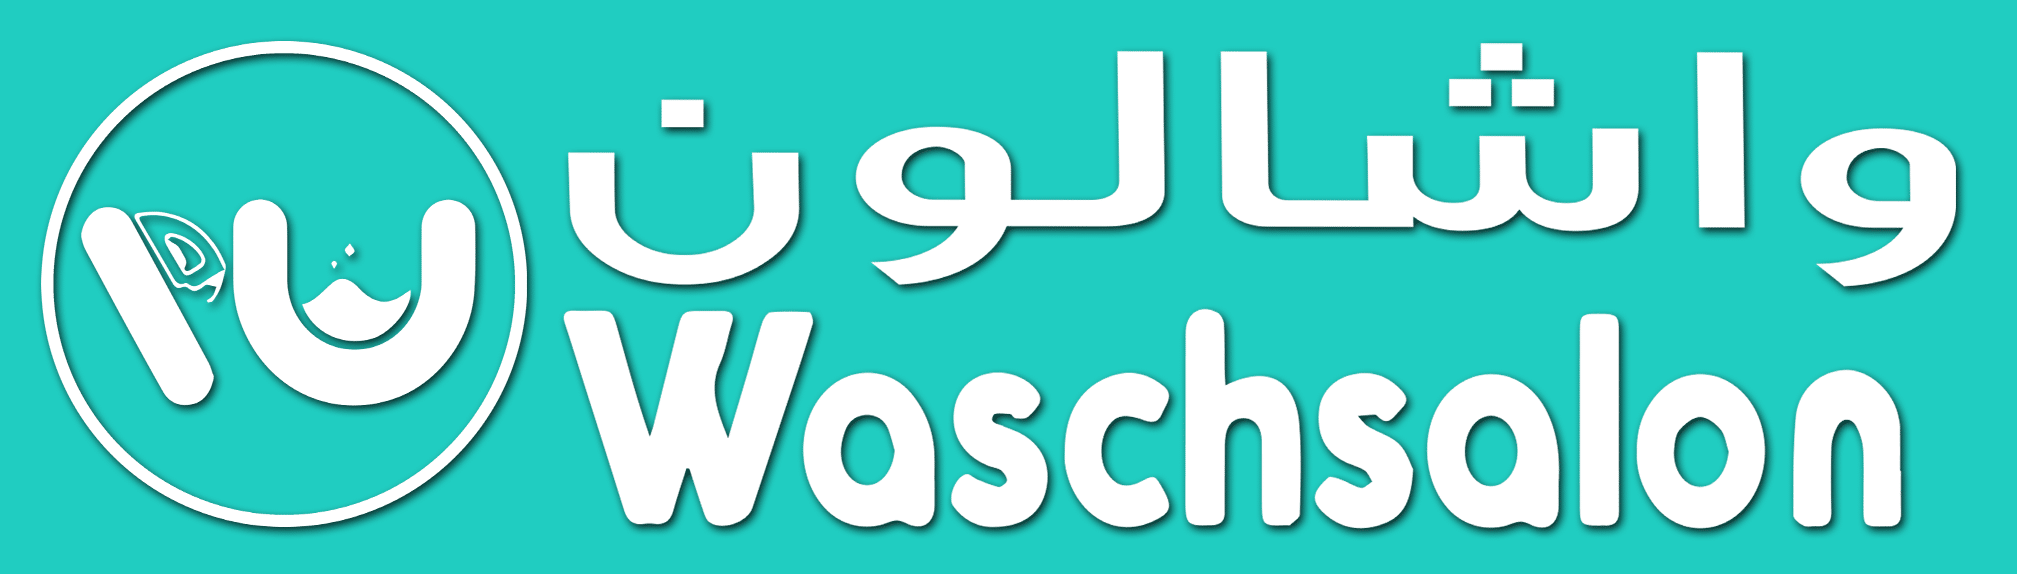 waschsalon-logo